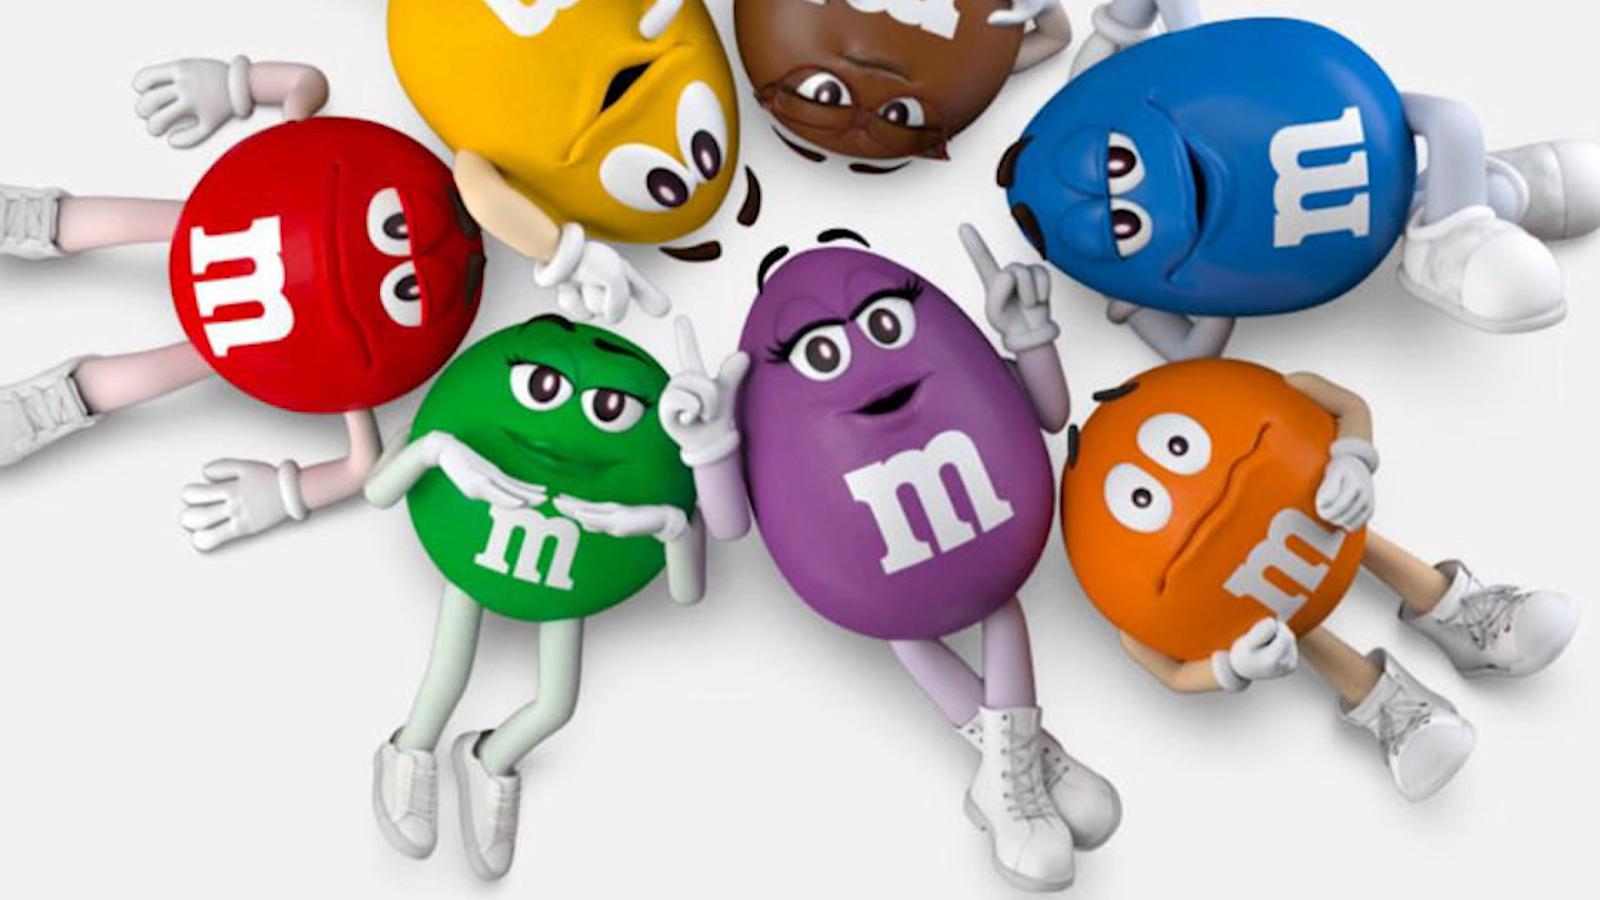 La familia de chocolates M&M tiene un nuevo personaje, ¿de quién se trata?